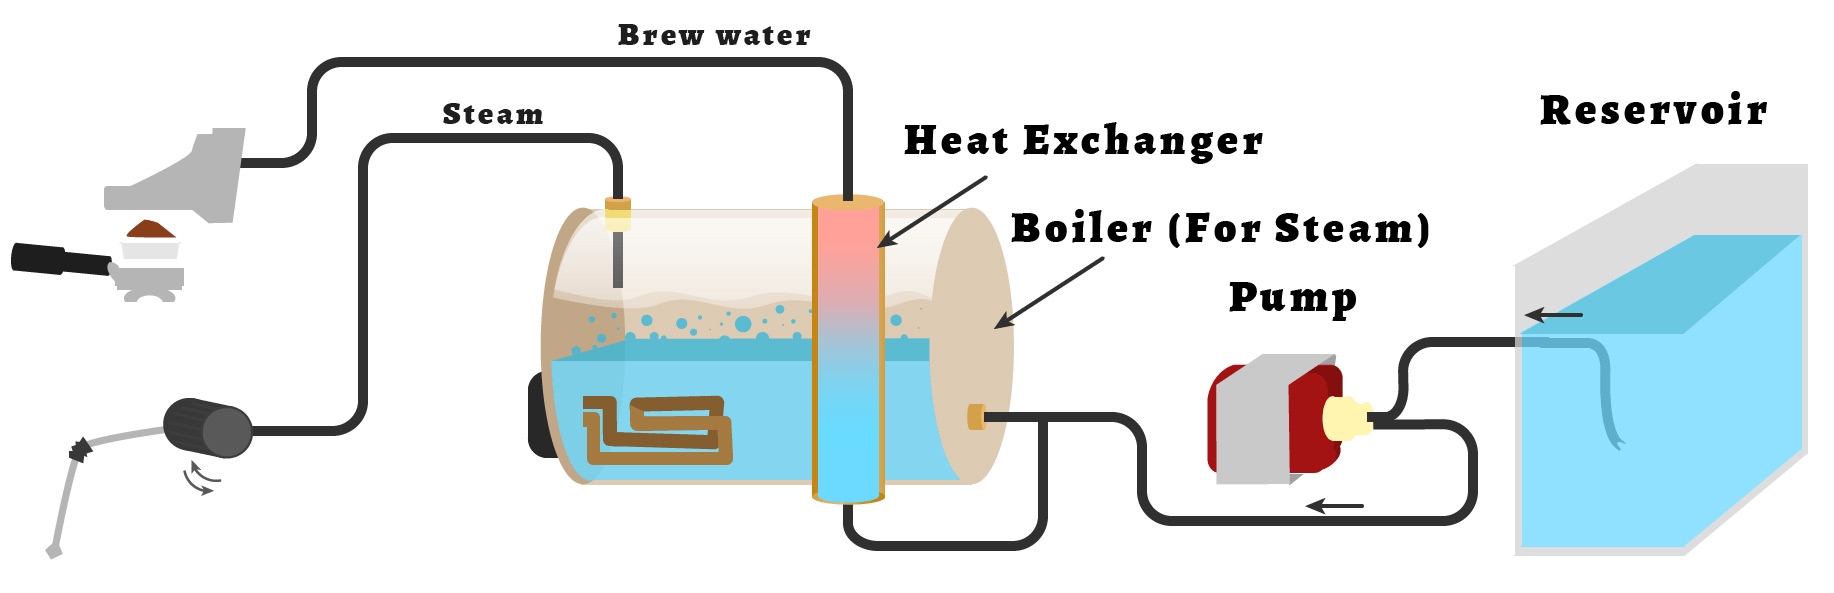 Modèles de chaudière avec échangeur de chaleur heatexchangercoffeemachine